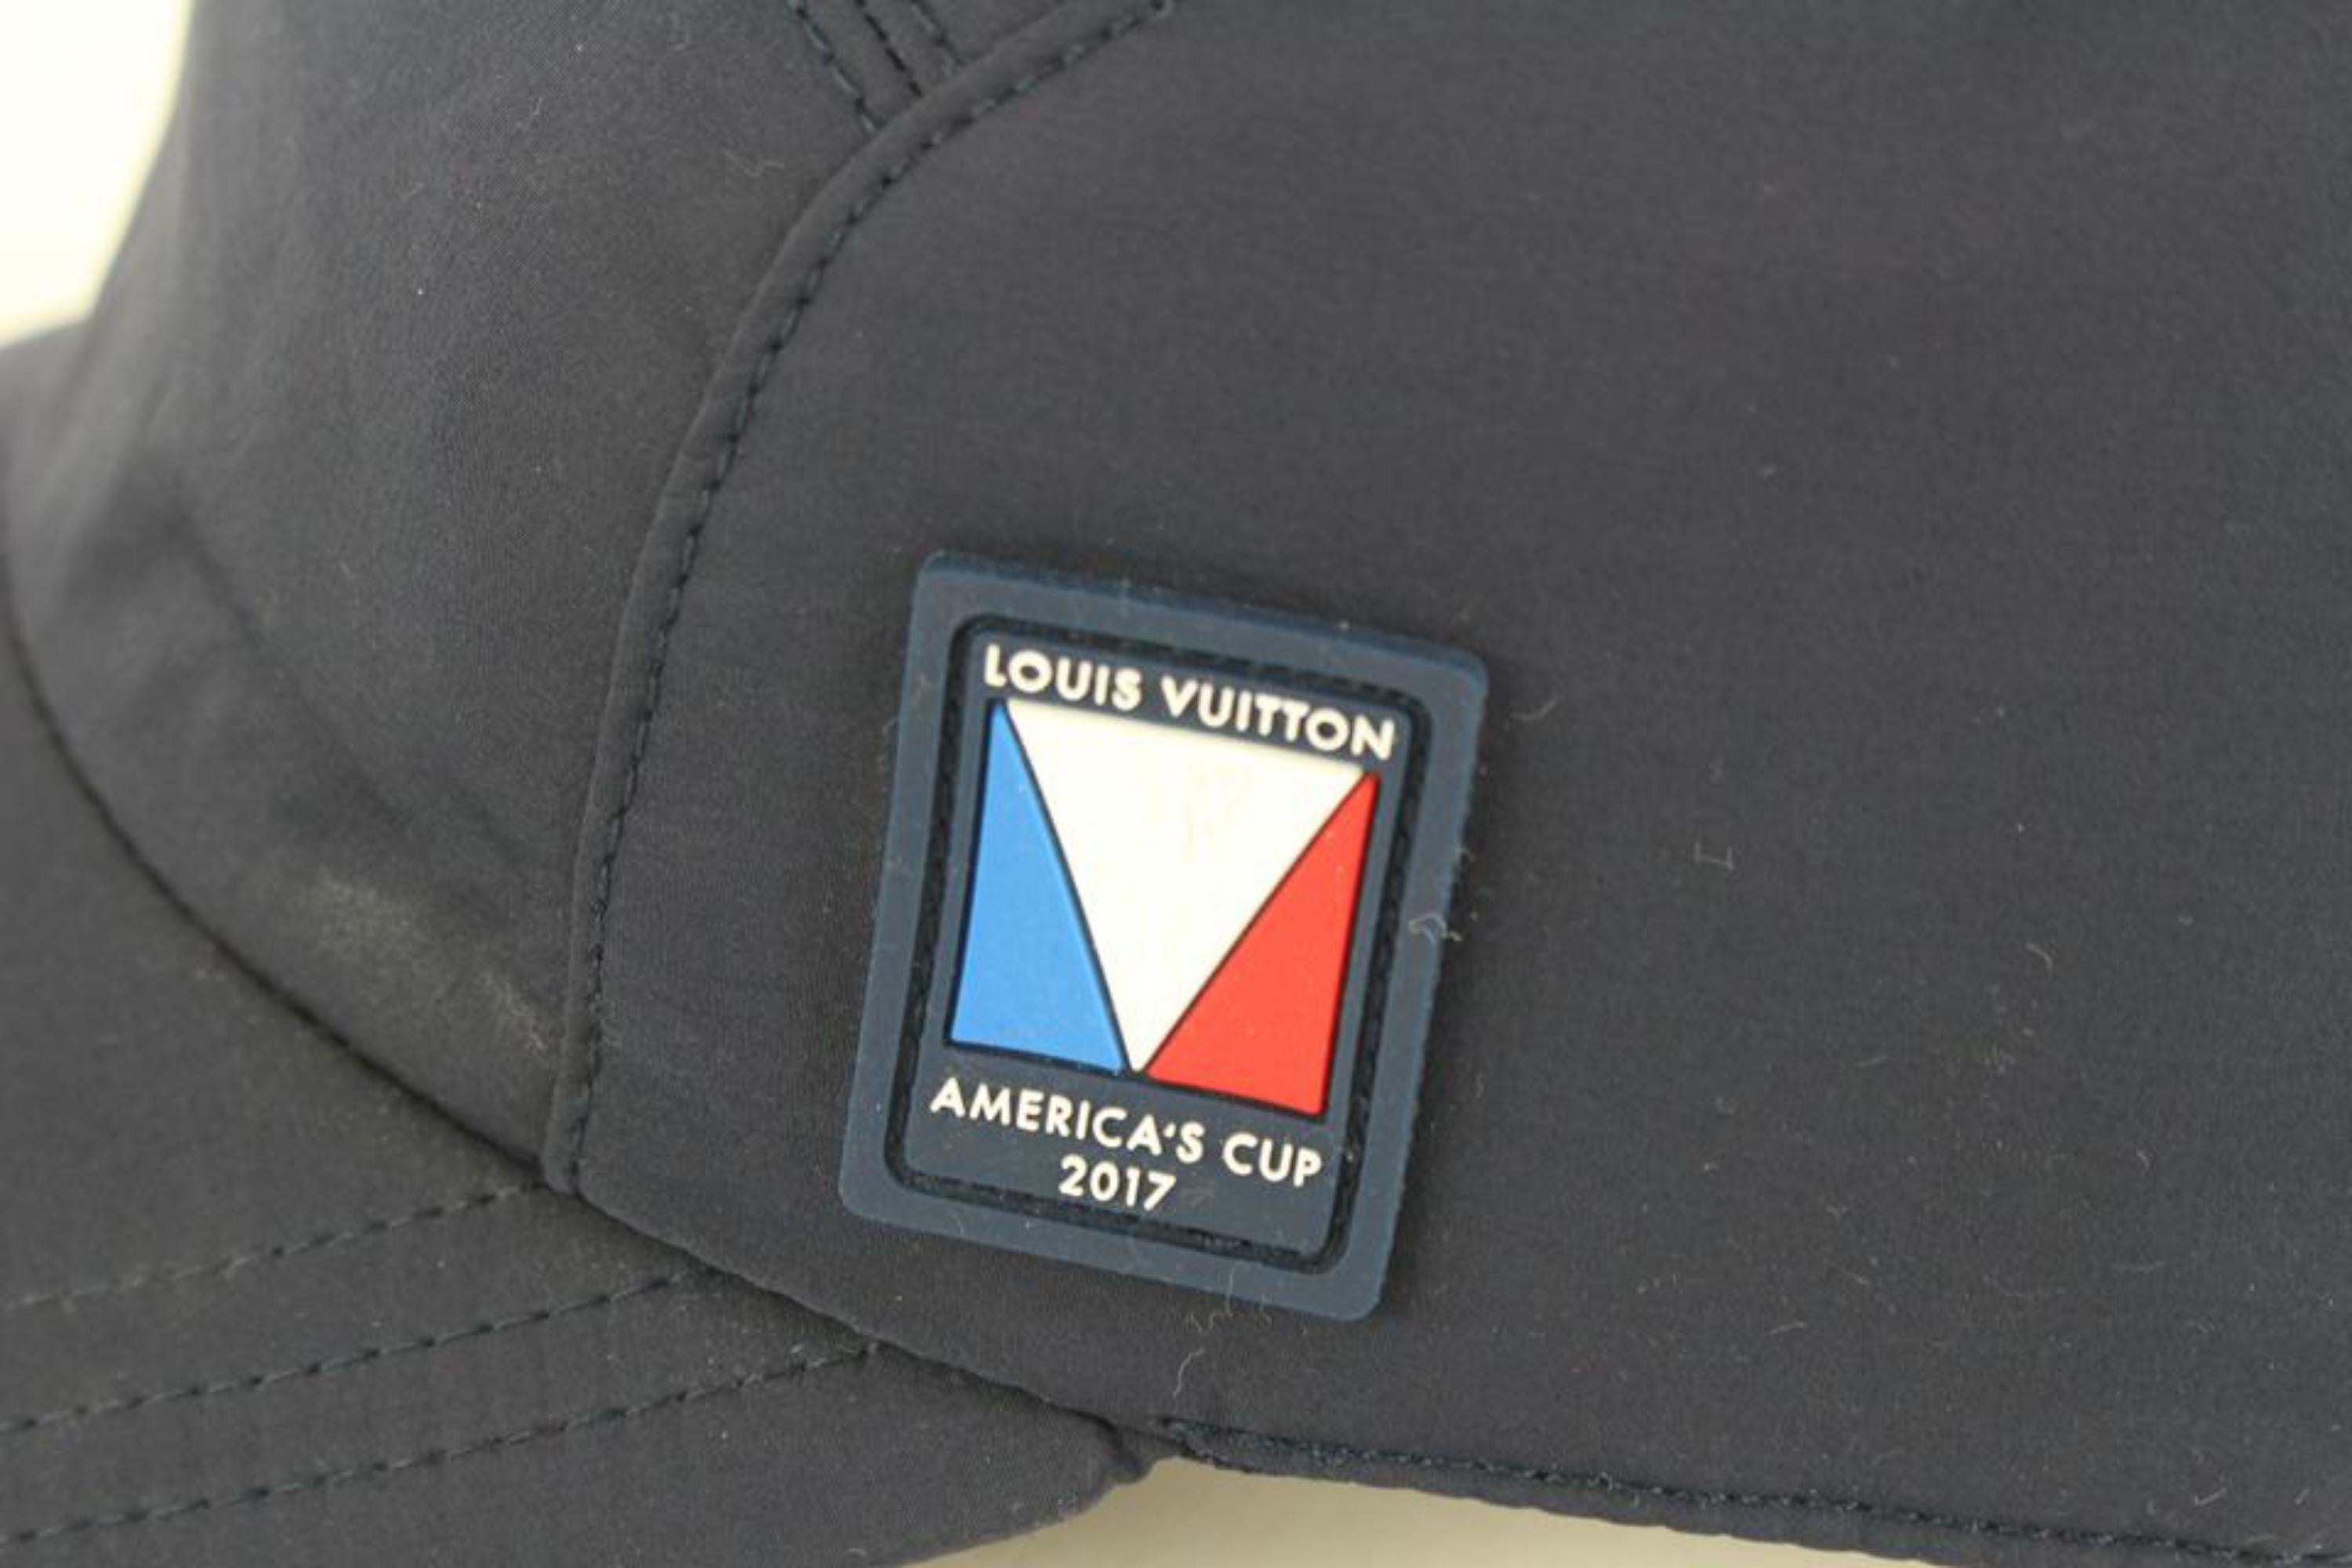 Louis Vuitton Summer Breath Hat, Navy, S